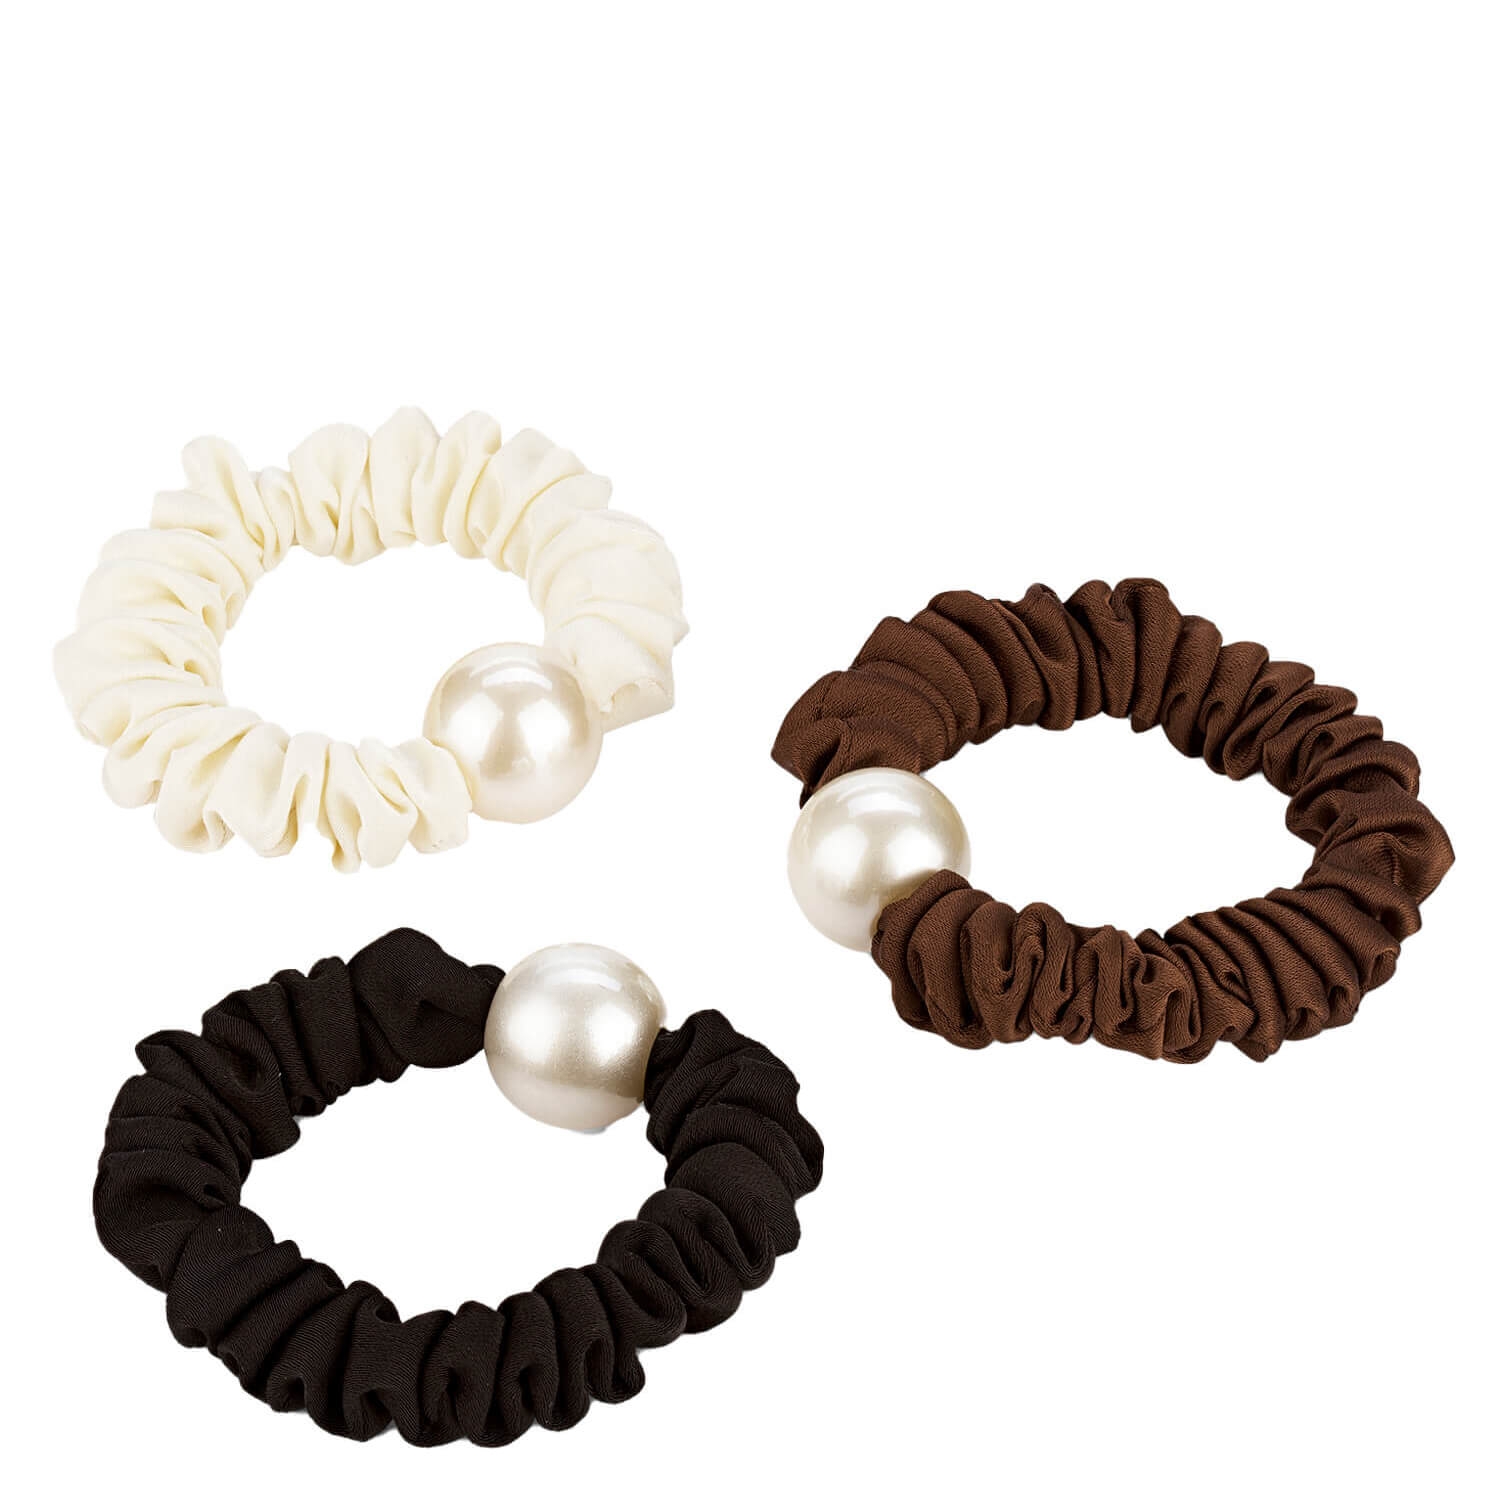 Produktbild von Haargummi mit Perle, schwarz, braun & beige